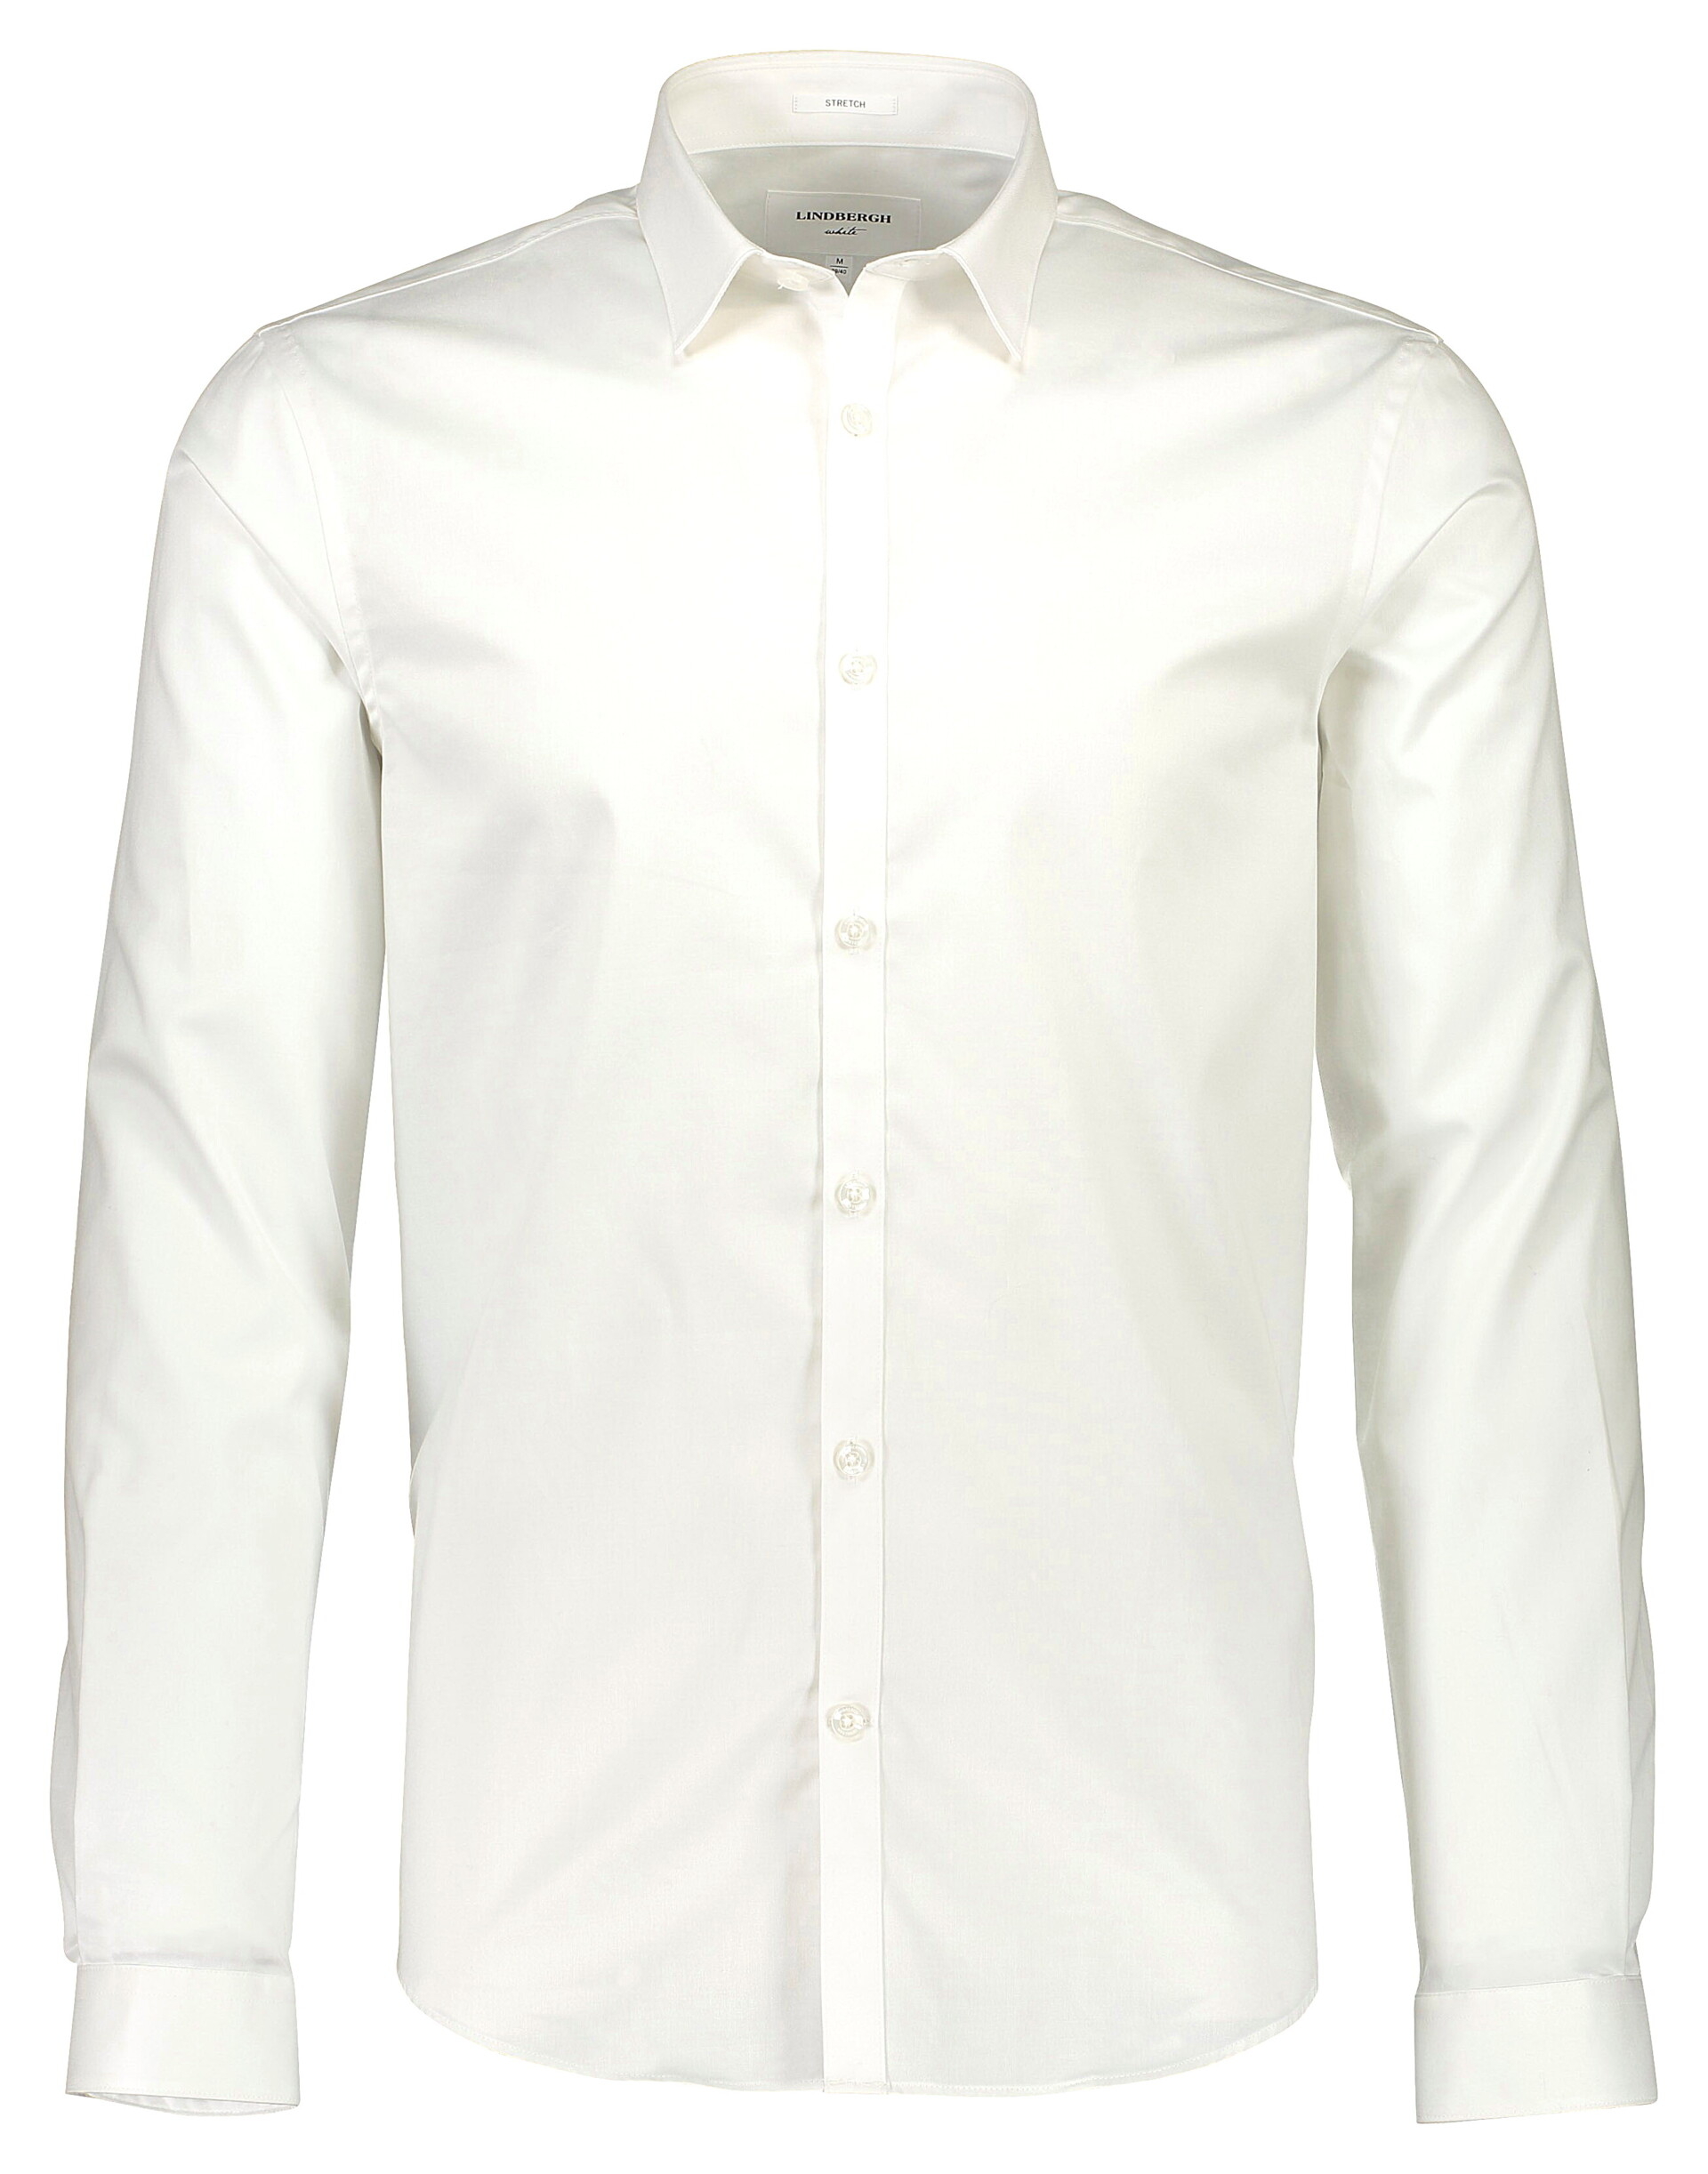 Lindbergh Business skjorte hvid / white